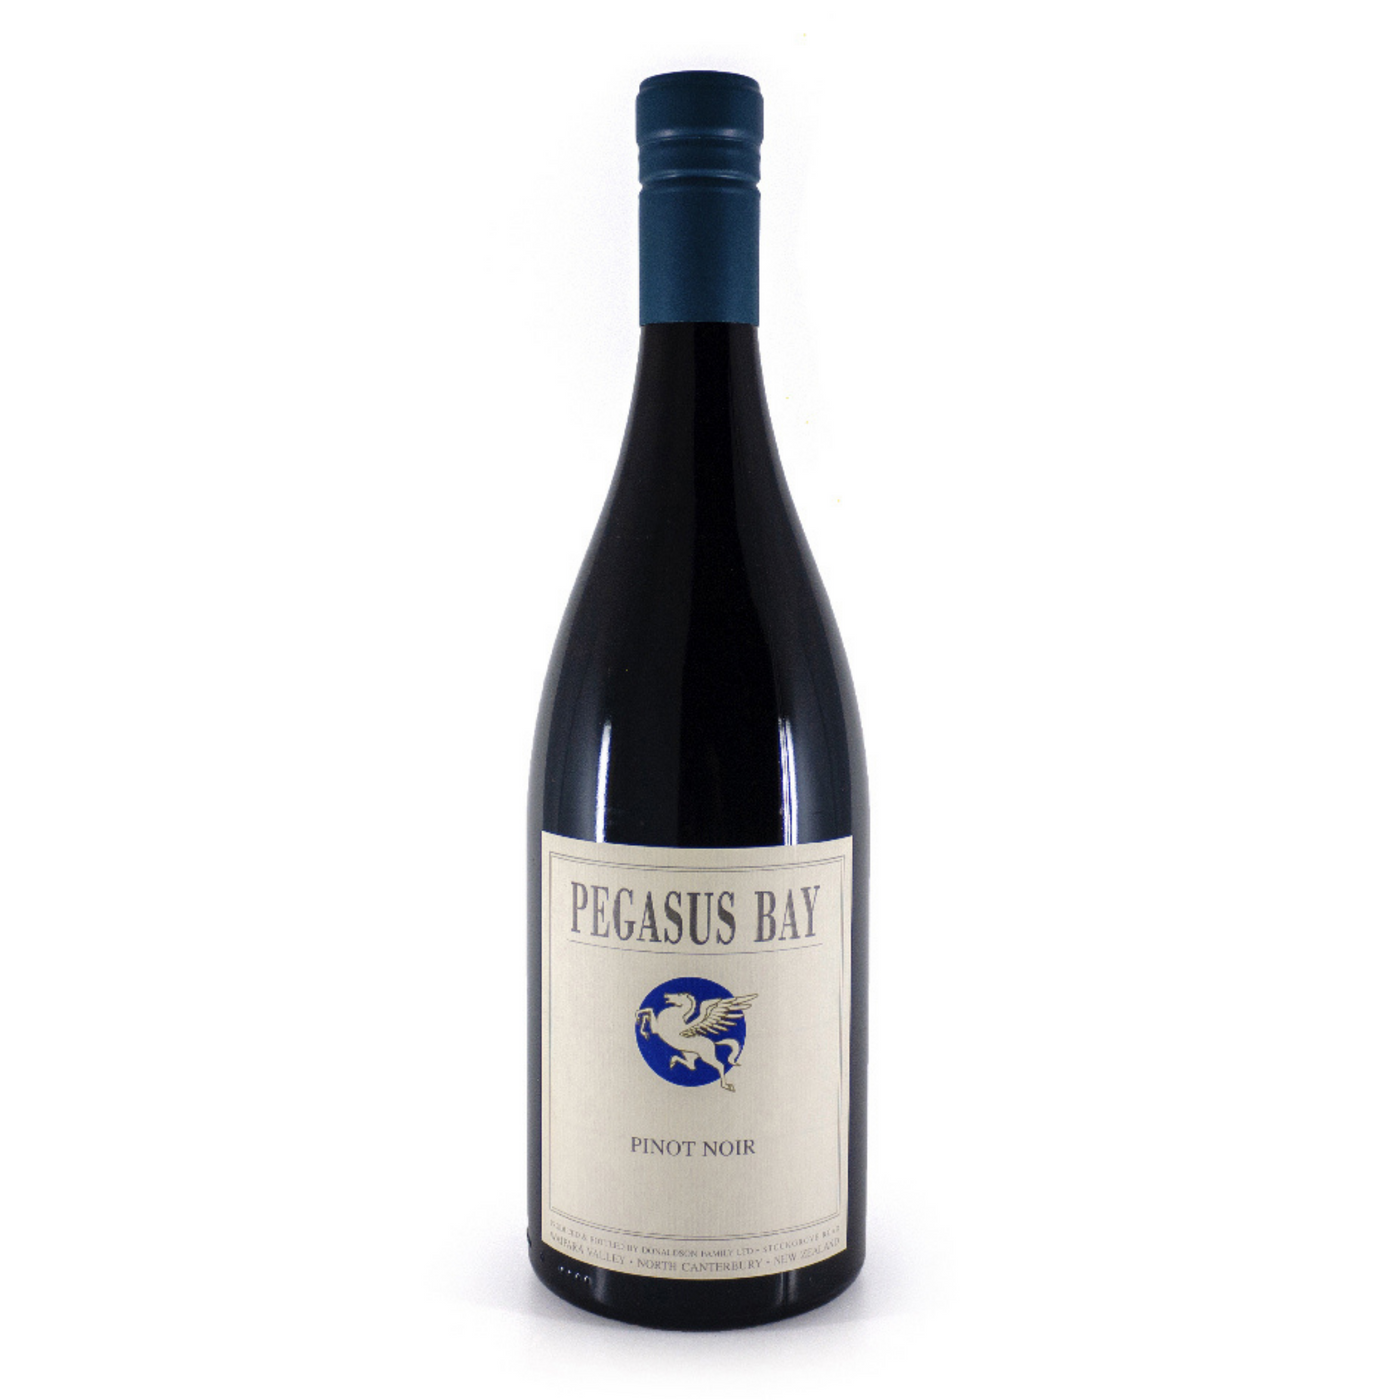 Pegasus Bay Pinot Noir 2019